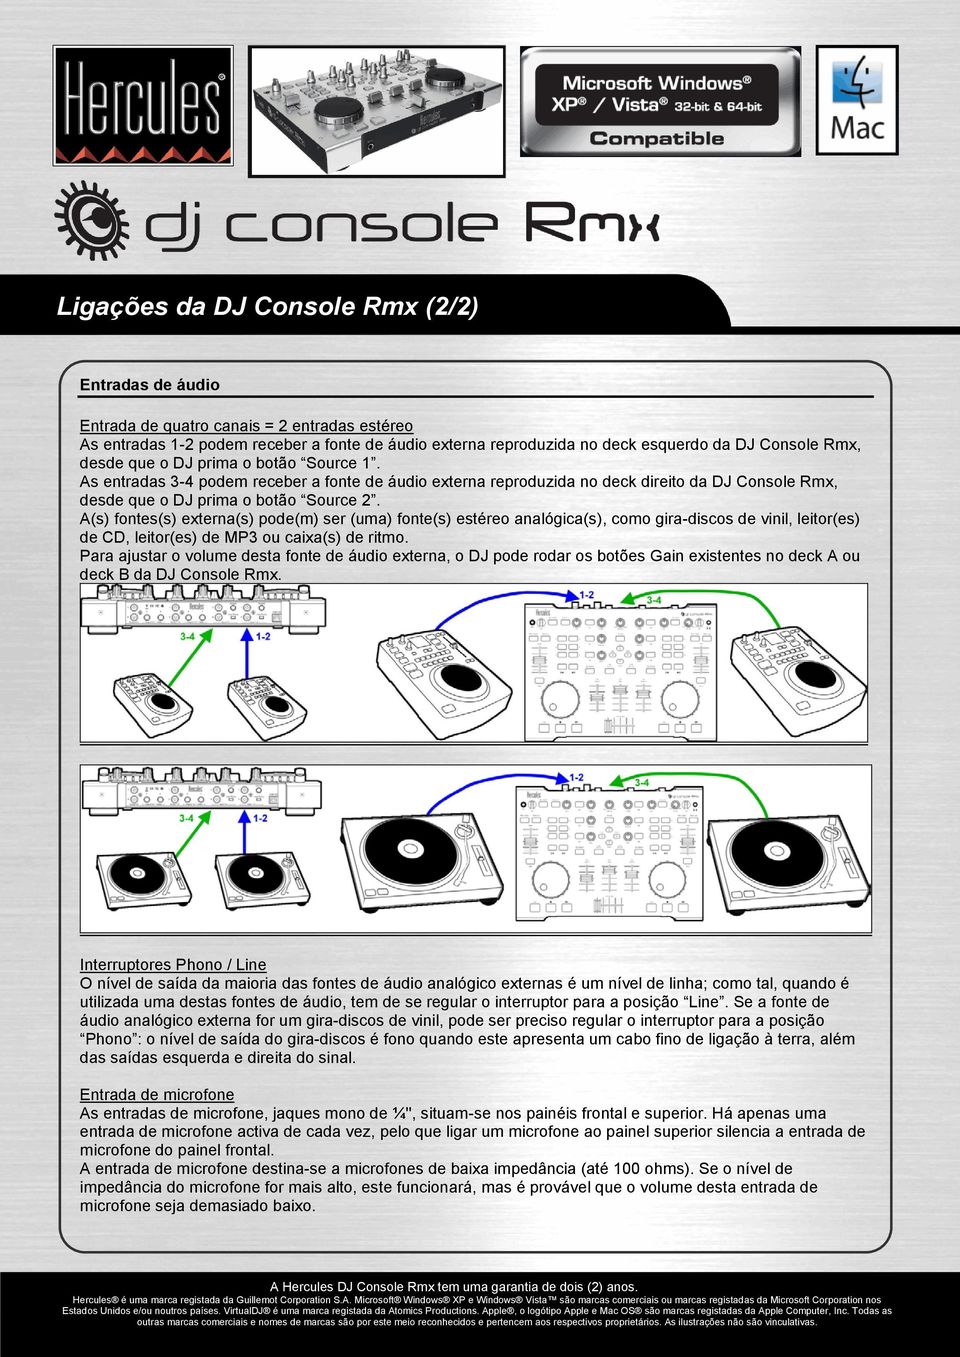 A(s) fontes(s) externa(s) pode(m) ser (uma) fonte(s) estéreo analógica(s), como gira-discos de vinil, leitor(es) de CD, leitor(es) de MP3 ou caixa(s) de ritmo.